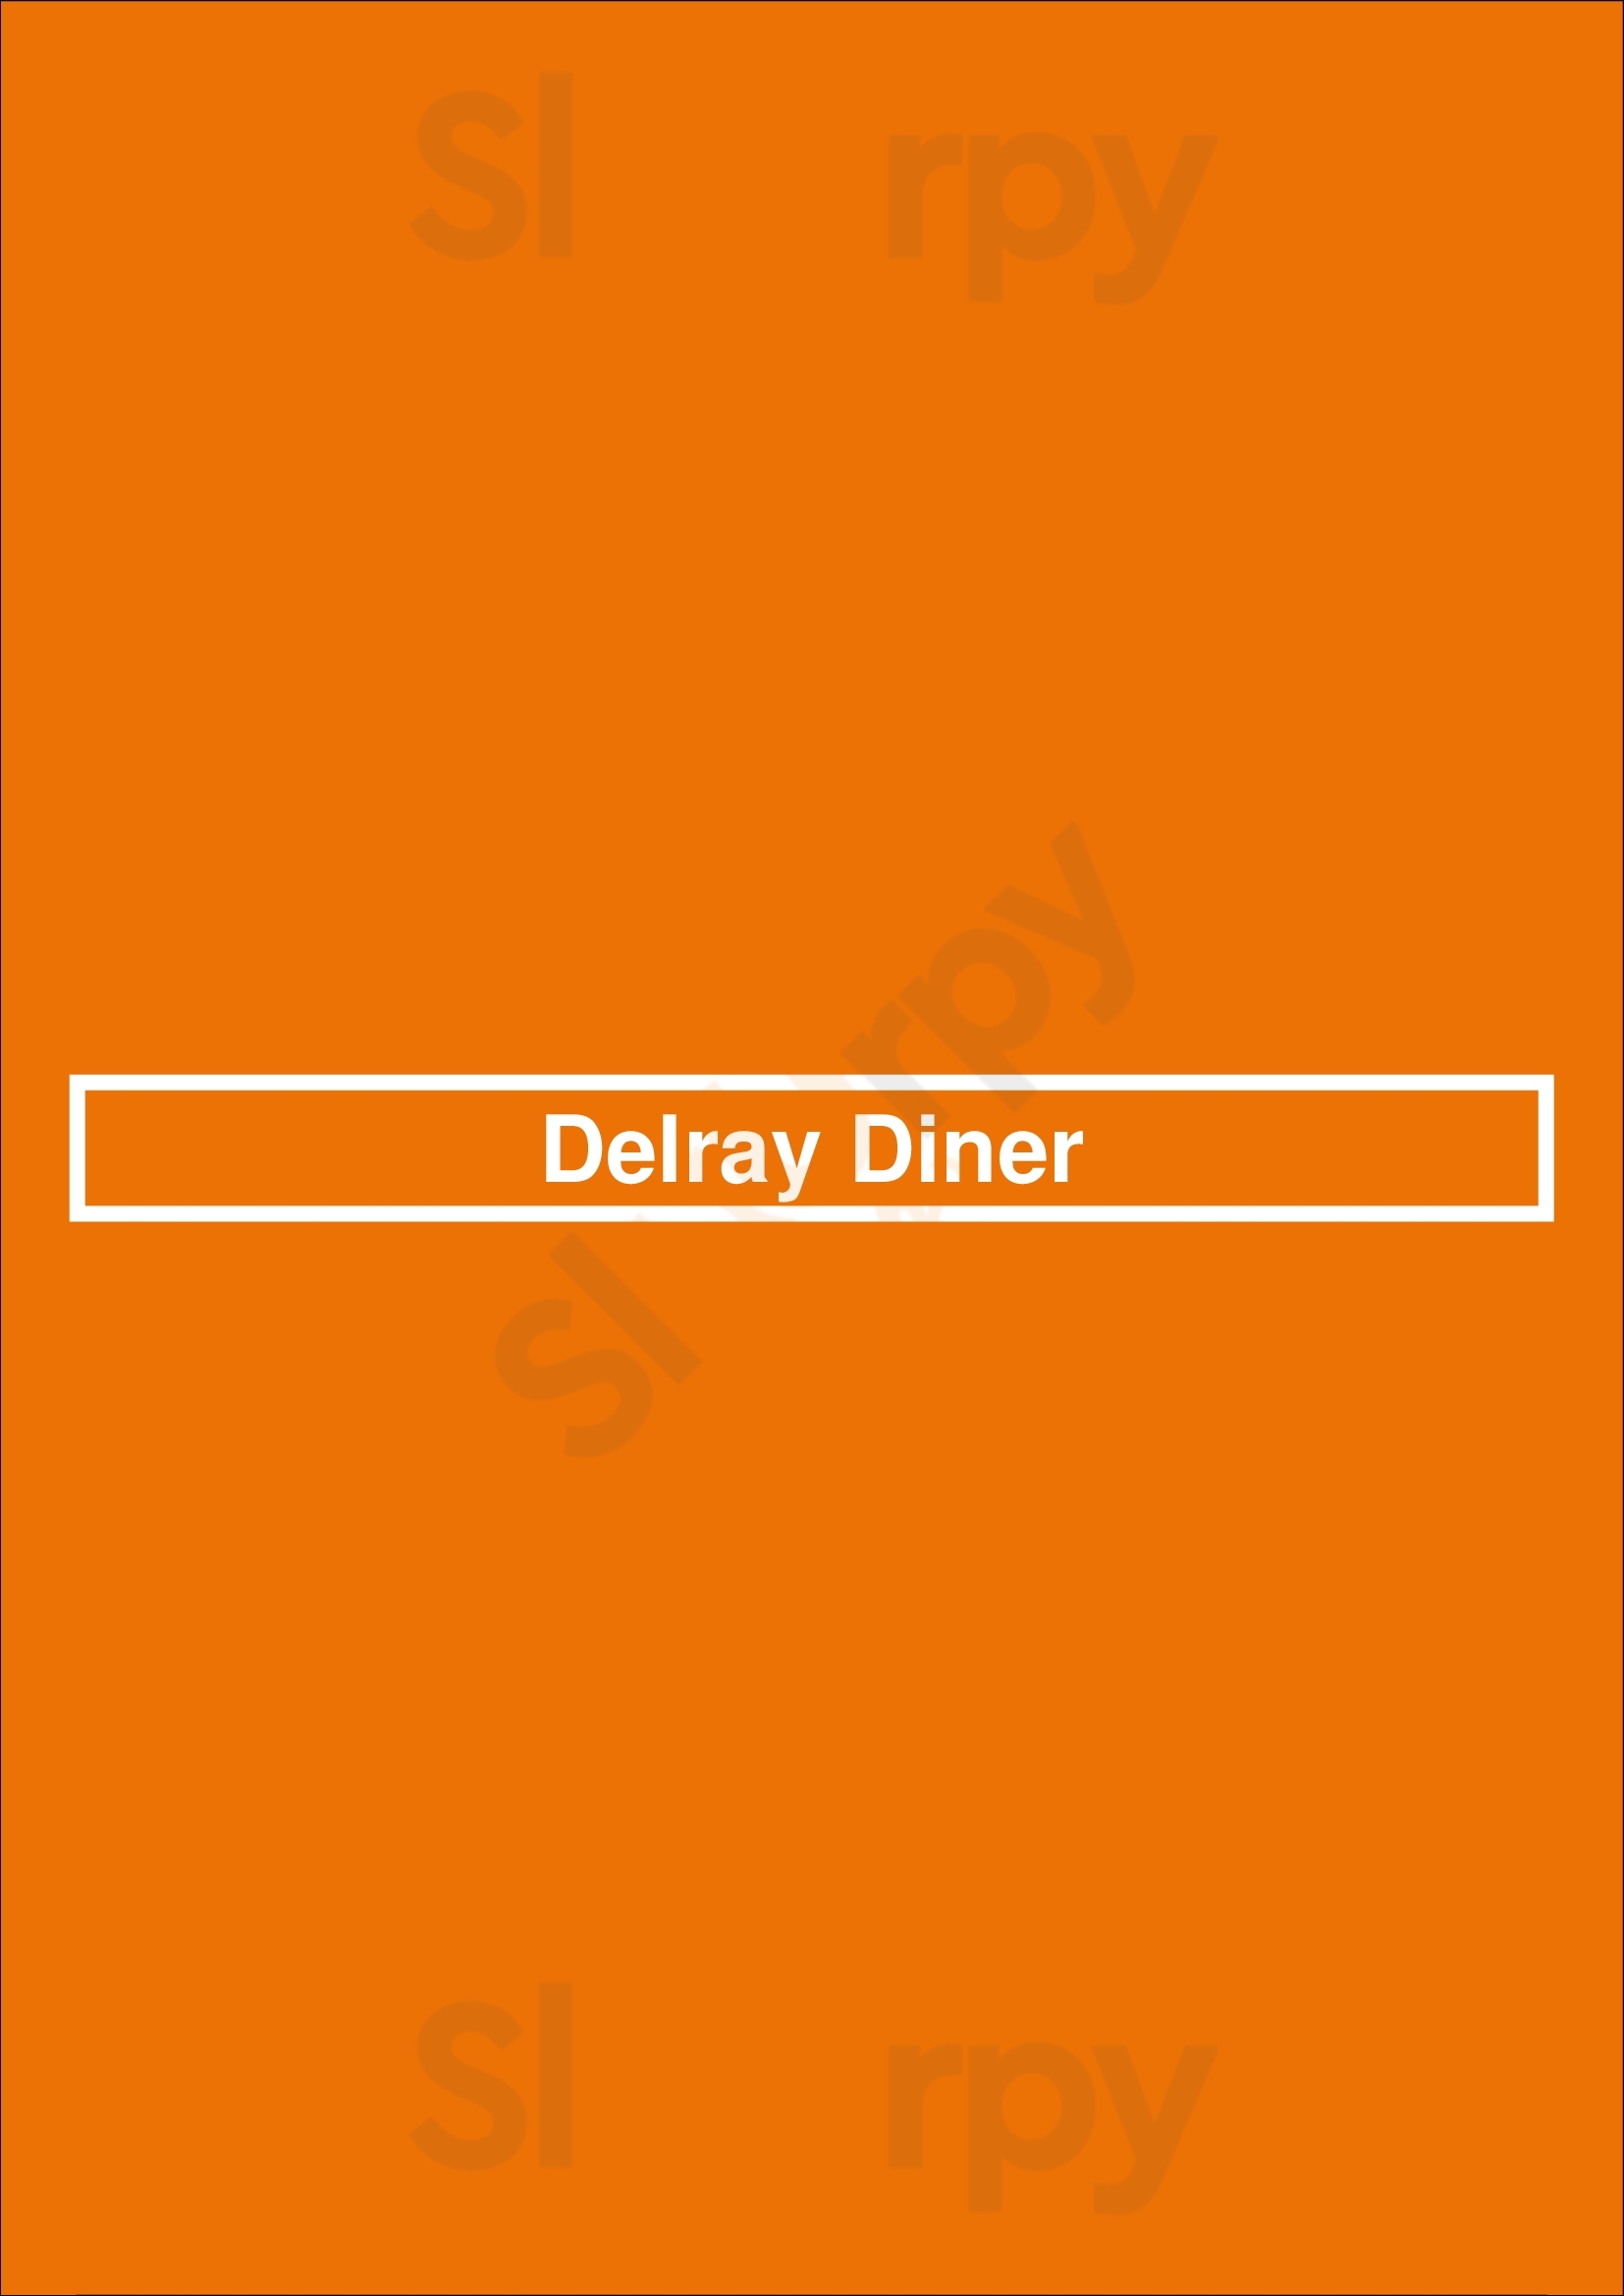 Delray Diner Atlanta Menu - 1